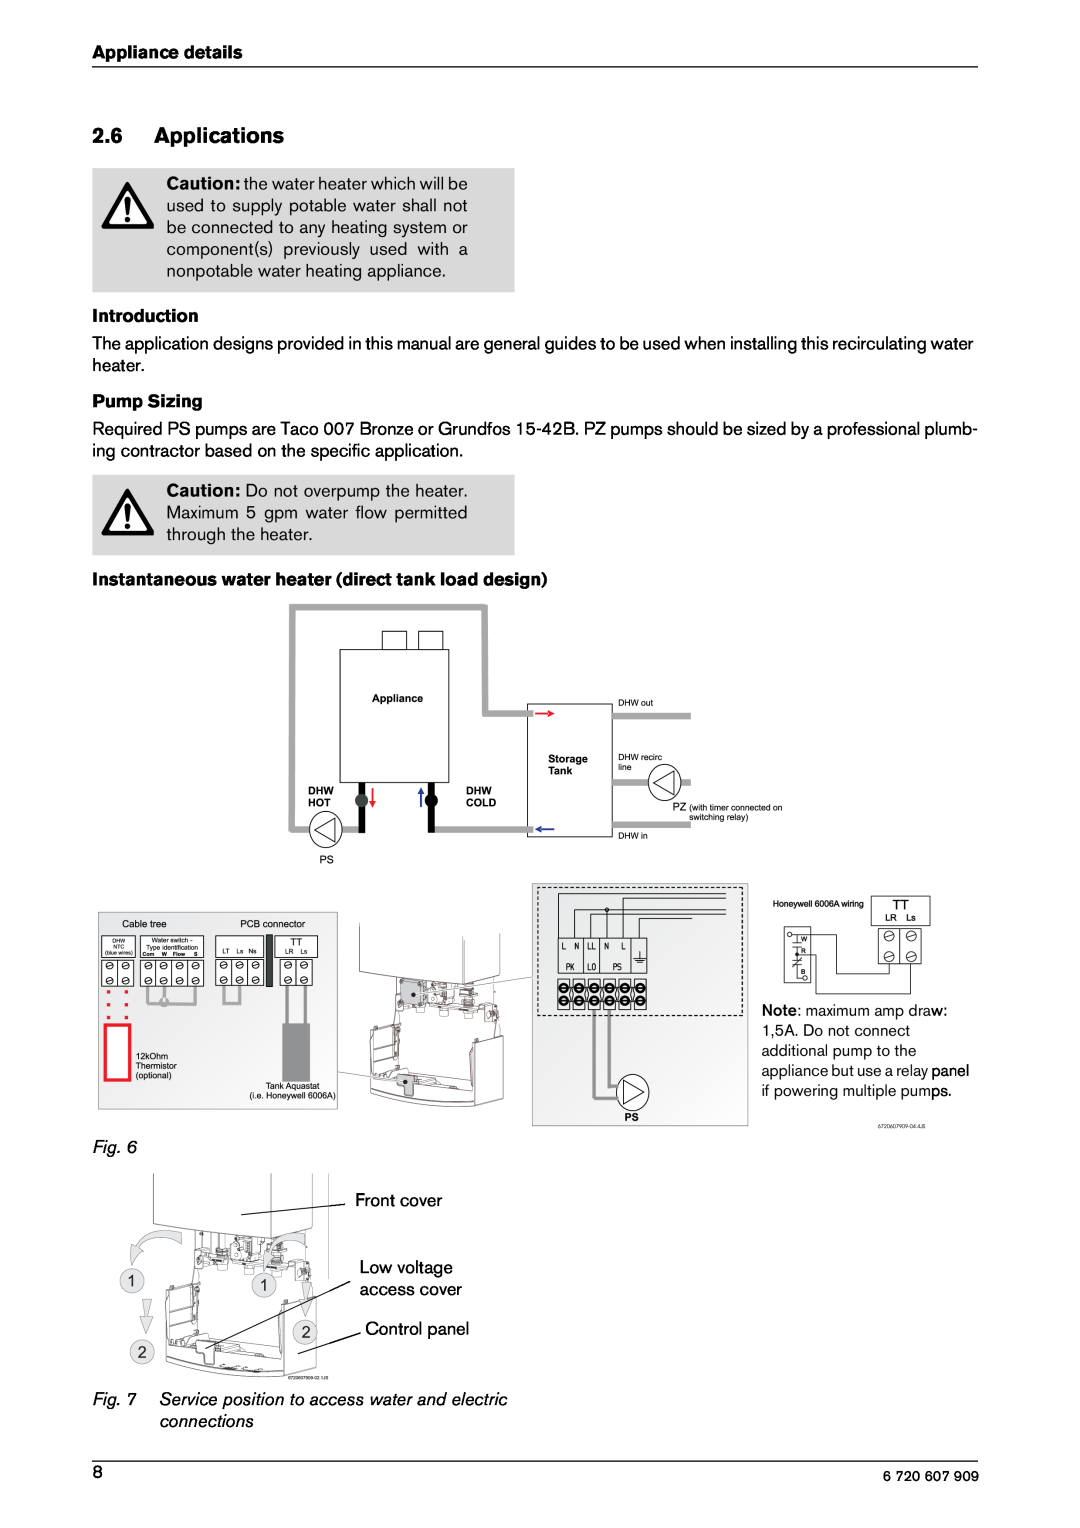 Bosch Appliances GWH-345/450-ESR-L, GWH-345/450-ESR-N manual Applications, Introduction, Pump Sizing, Appliance details 